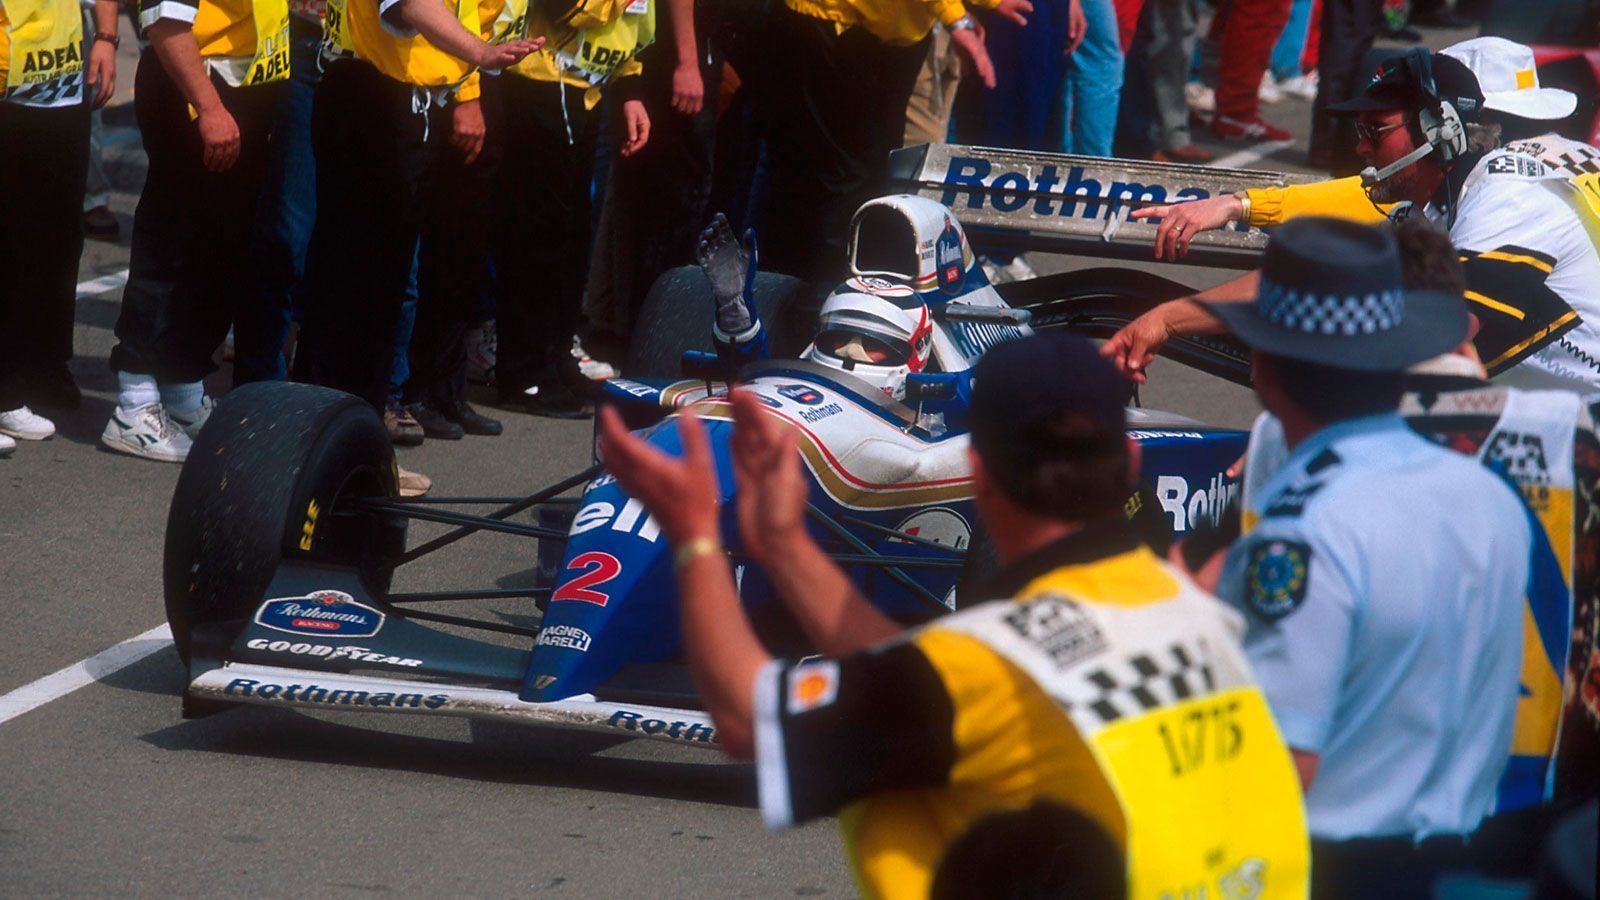 
                <strong>Nigel Mansall (Williams) - 1994</strong><br>
                Wie Larini kommt auch Nigel Mansell 1994 als Ersatzfahrer zum  EInsatz. Der Brite kehrt der Formel 1 nach der Saison 1992 den Rücken und konzentriert sich stattdessen auf die ChampCar-Rennserie in den USA, die er auch auf Anhieb gewinnt. Nach dem tragischen Tod Ayrton Sennas in Imola reaktiviert das Williams-Team den Formel 1-Weltmeister von 1992. Nach zwei Ausfällen findet Mansell zurück zu alter Stärke, in Suzuka wird er Vierter, ehe er, begünstigt durch den Unfall von Michael Schumacher und Damon Hill, das letzte Rennen des Jahres im australischen Adelaide gewinnt. 1995 fährt Mansell noch zwei Rennen für McLaren-Mercedes und beendet dann seine aktive Rennkarriere.
              